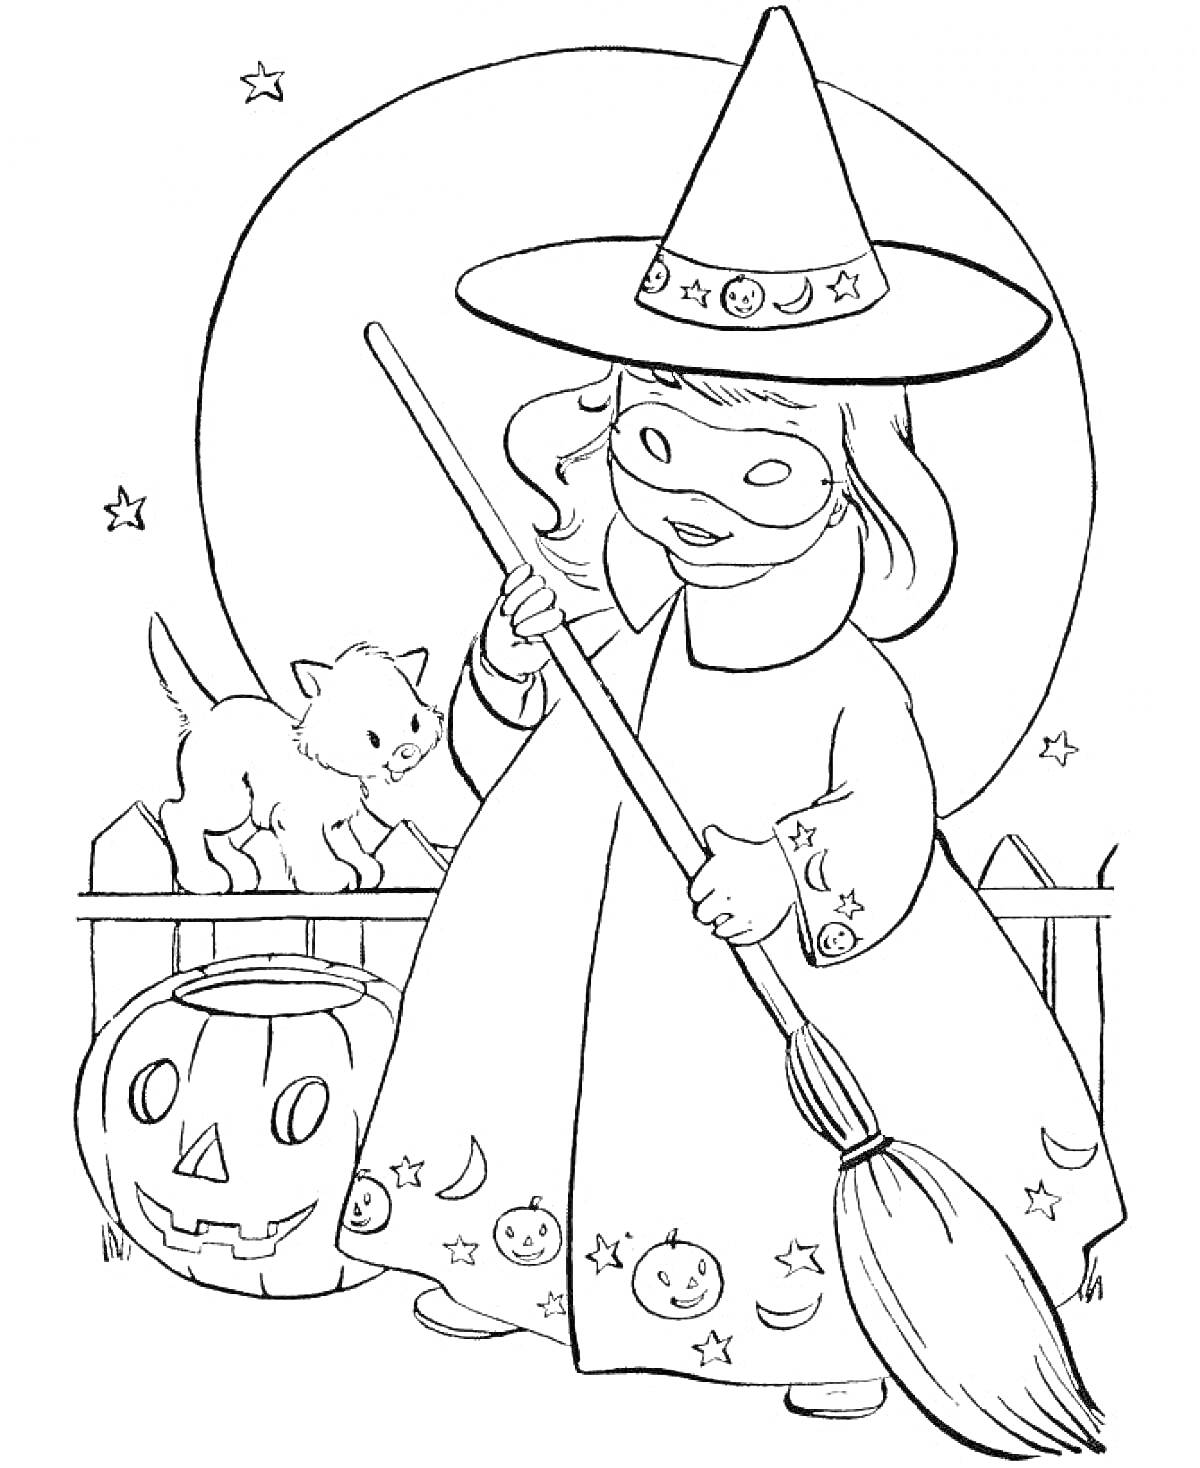 Раскраска Ведьма в шляпе с метлой и тыквой, кот на заборе, звезды и луна